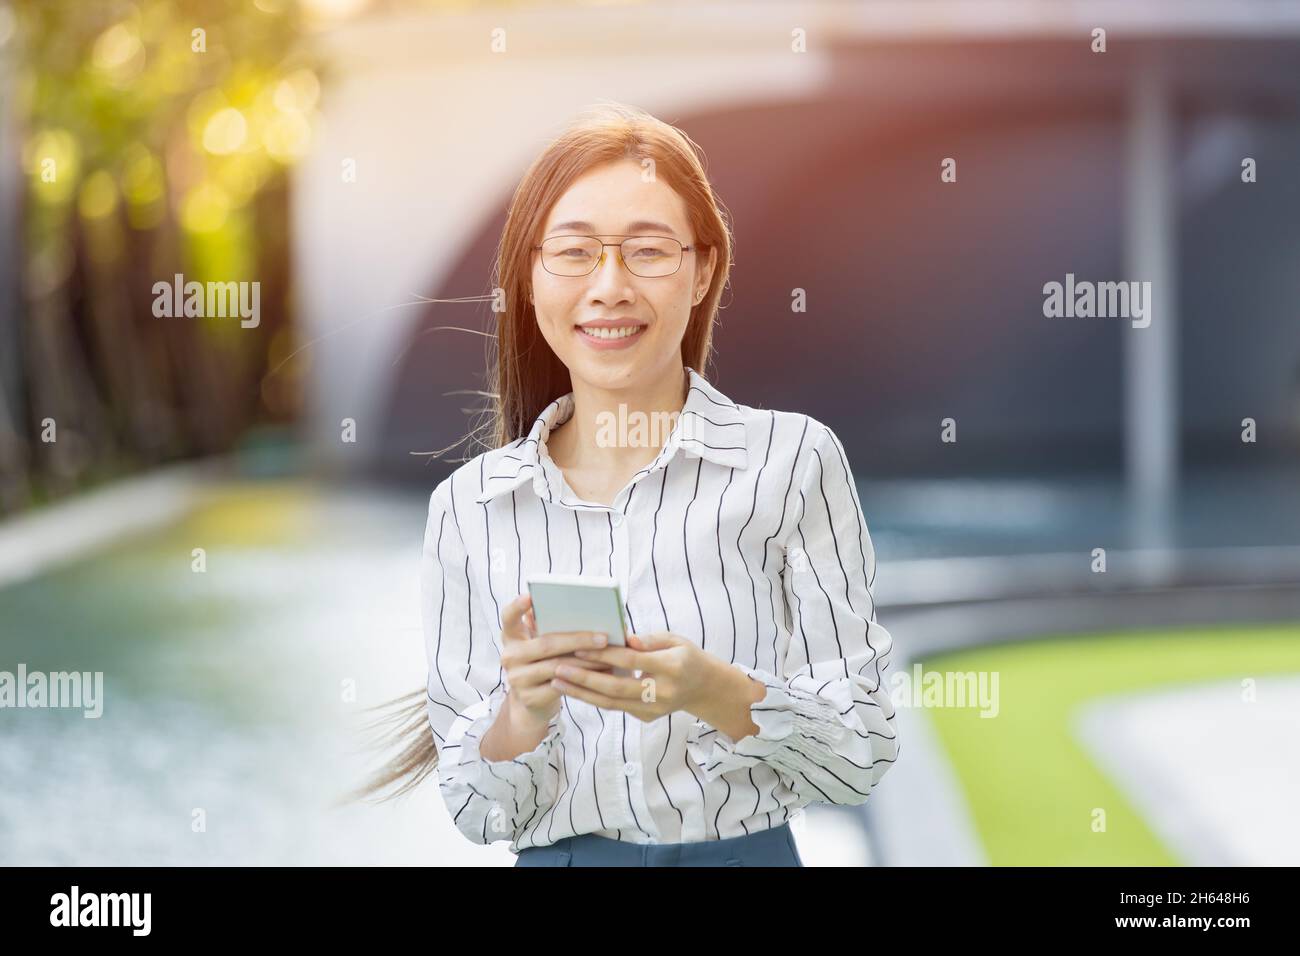 Portrait asiatique hommes d'affaires femmes adulte intelligente femme debout regardant un appareil photo avec un smartphone Banque D'Images